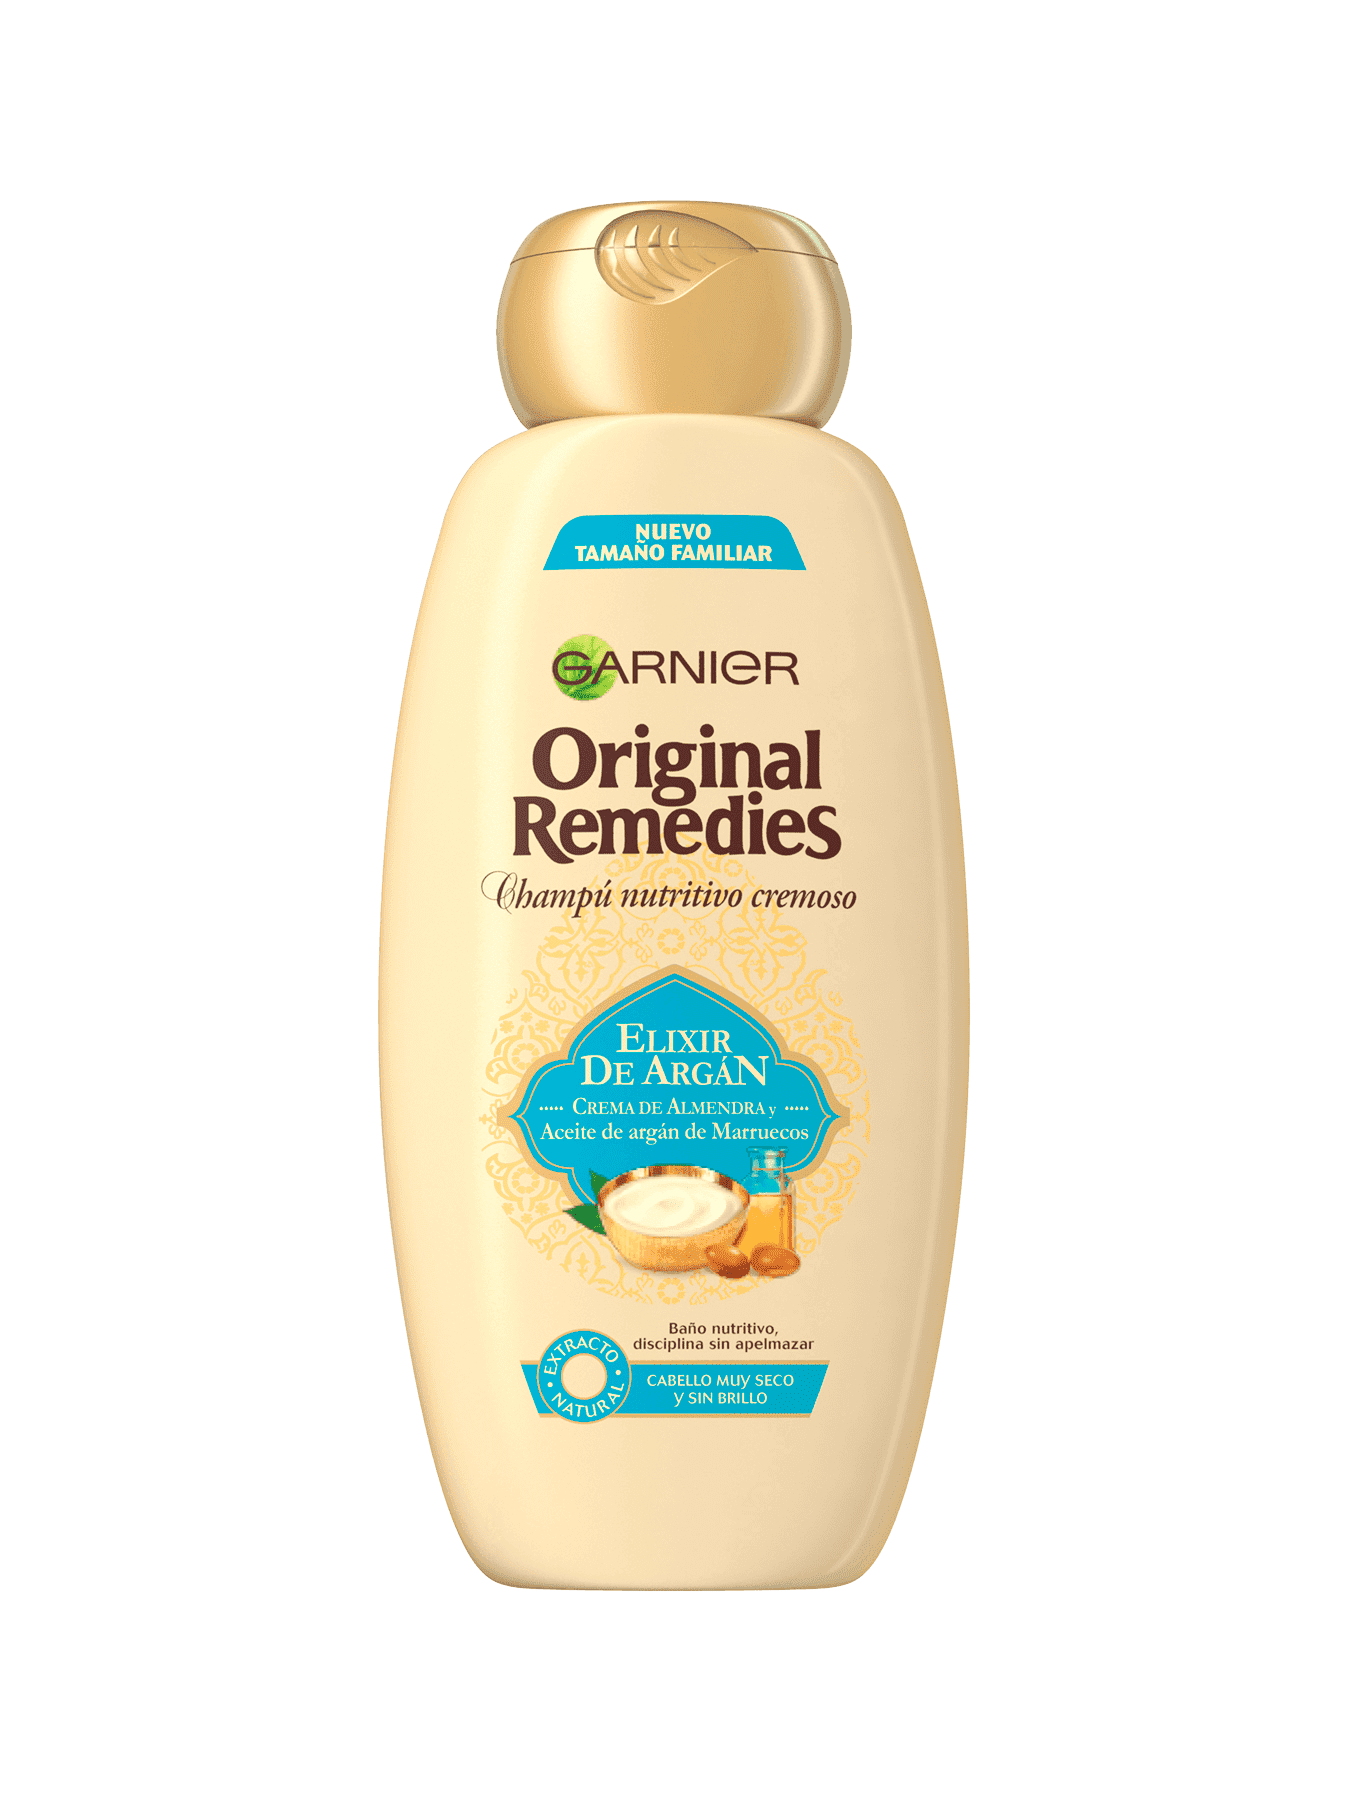 shampoo nutritivo original remedies